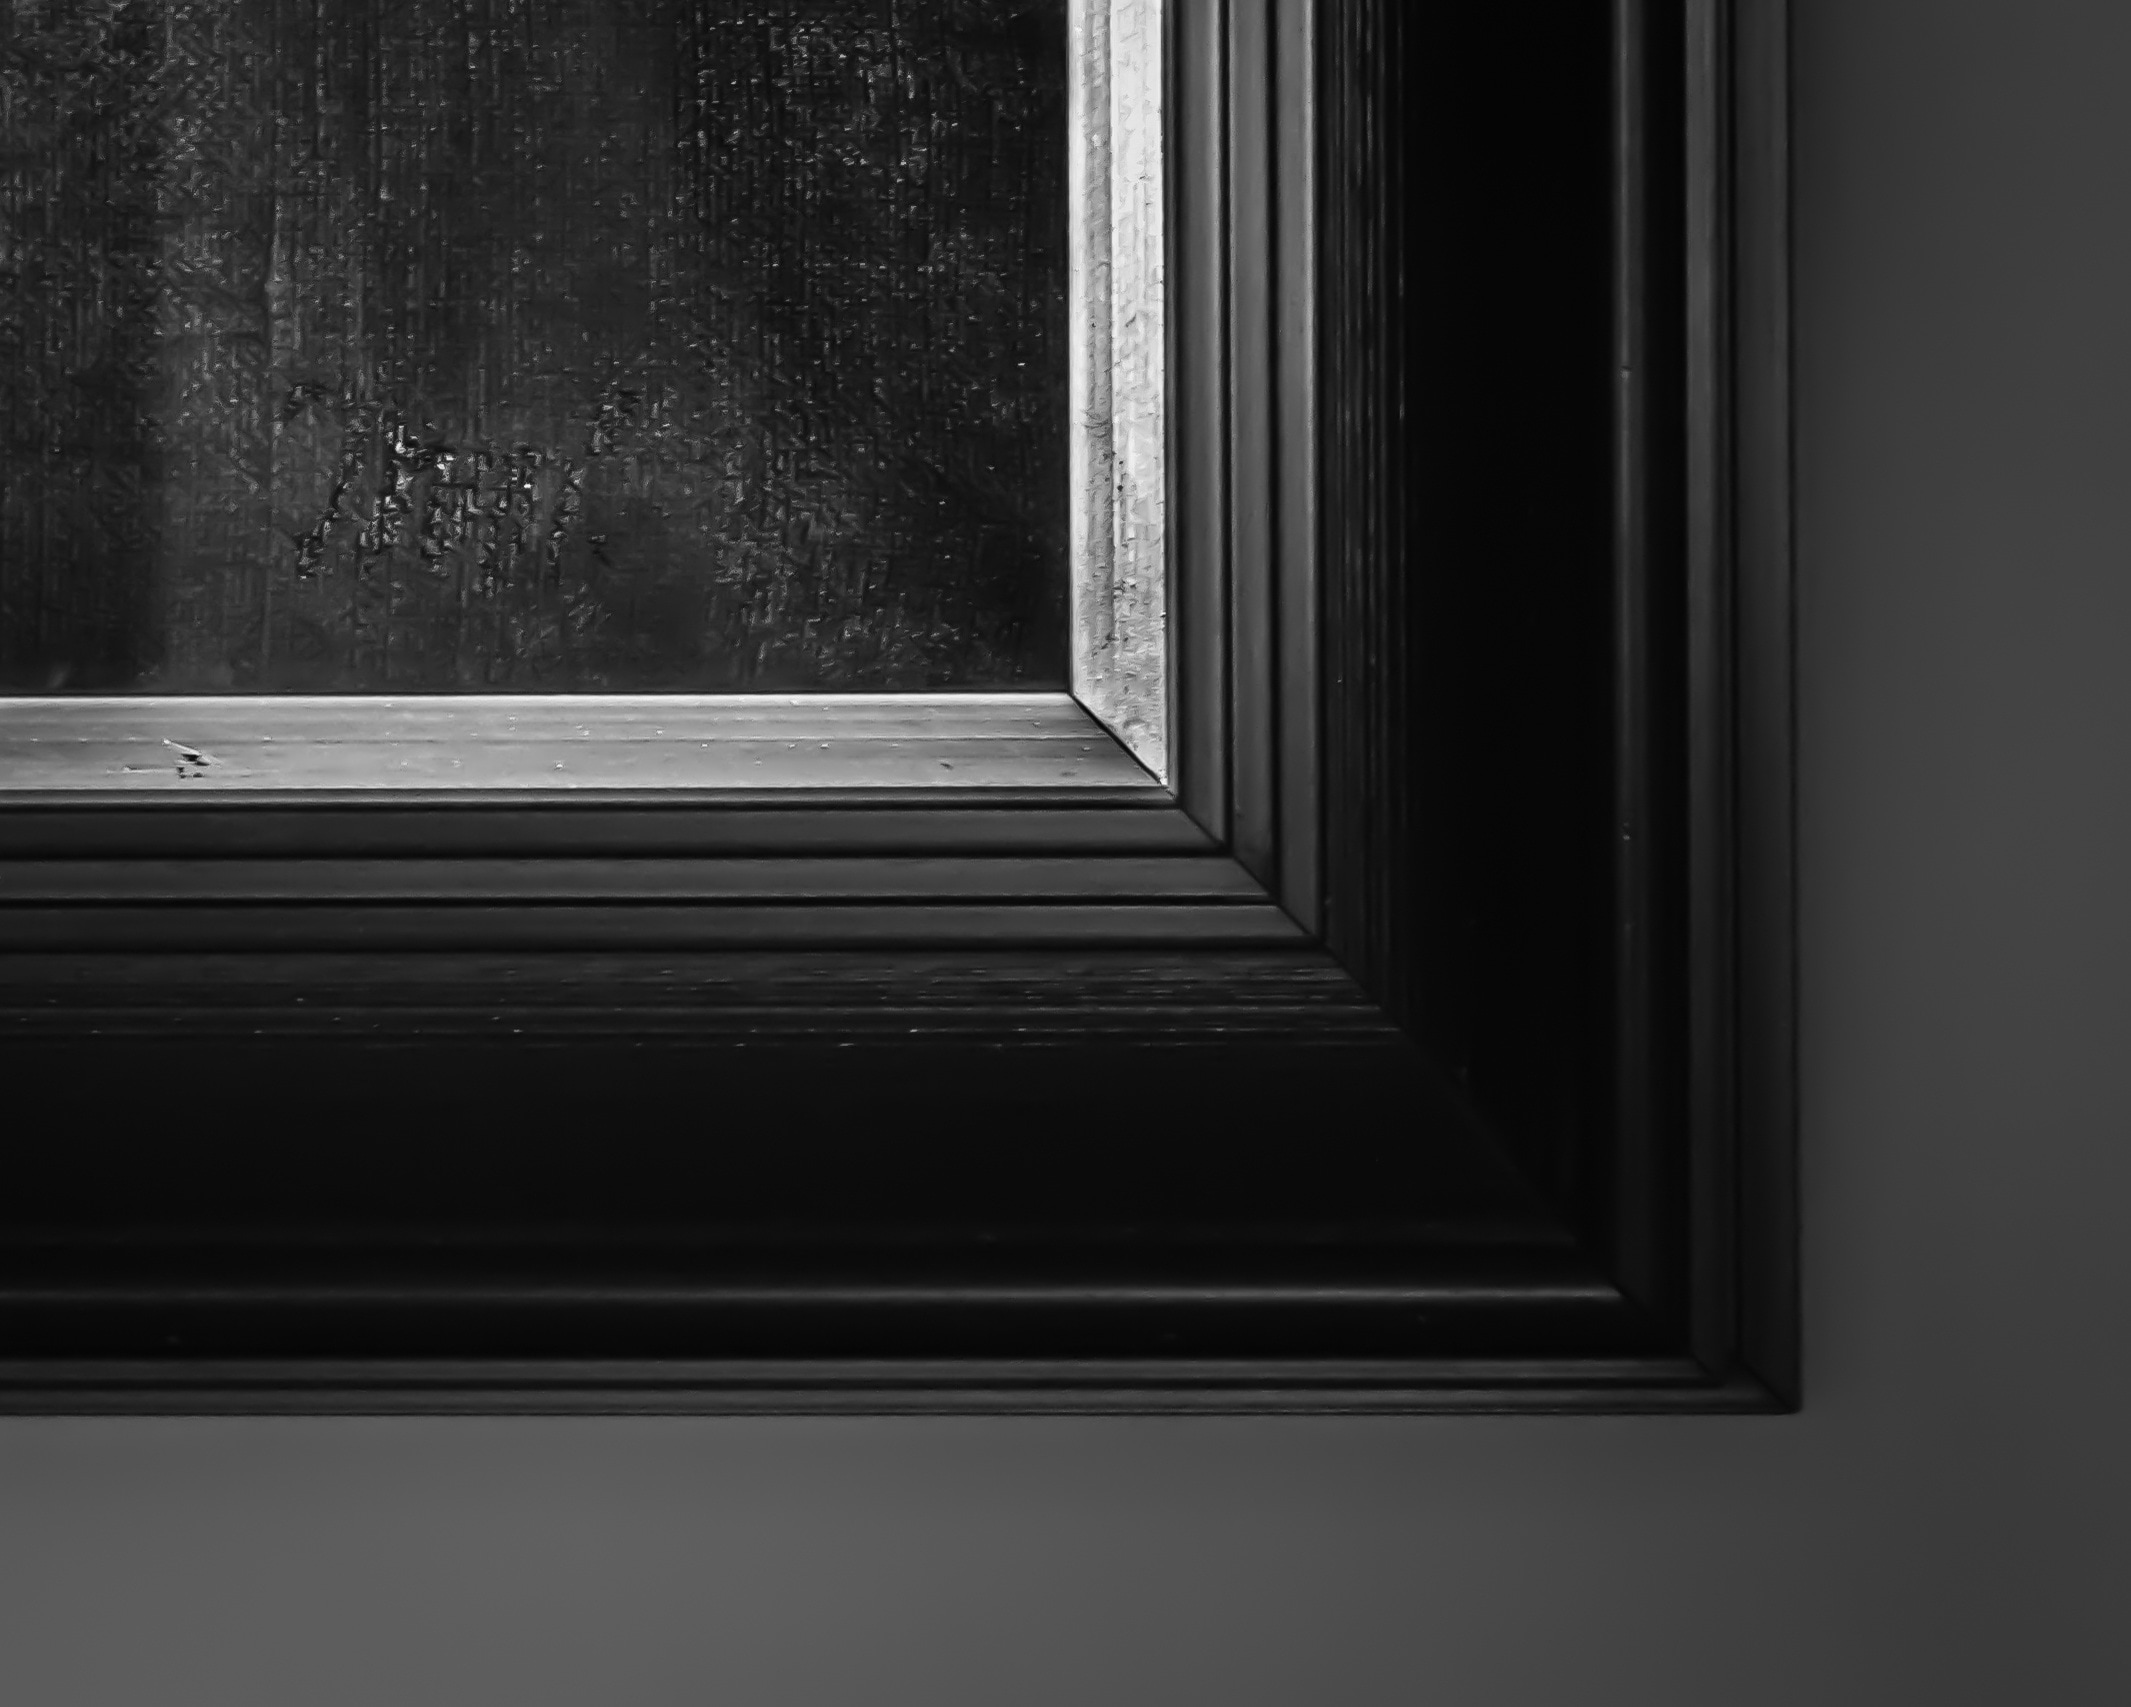 black wooden frame